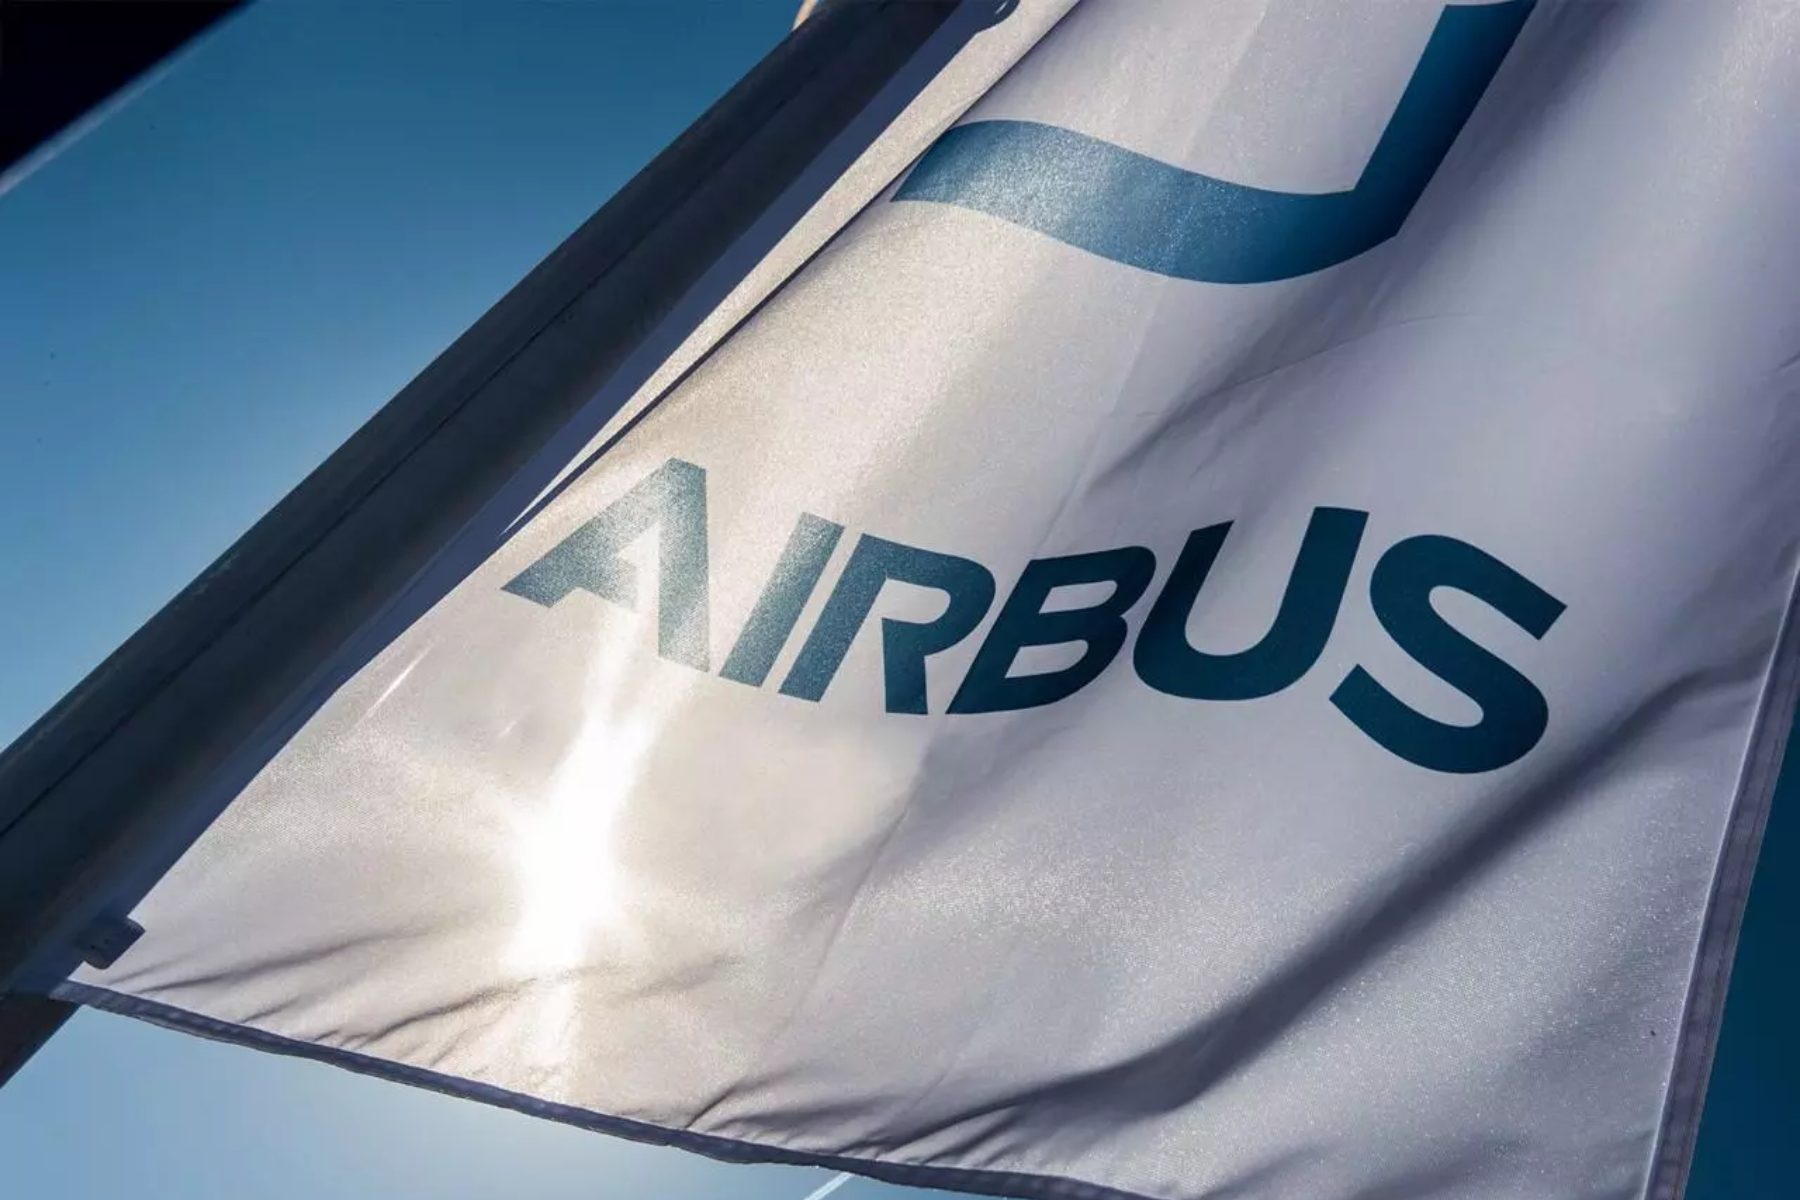 Airbus pondrá a prueba en un vuelo energía auxiliar generada con hidrógeno